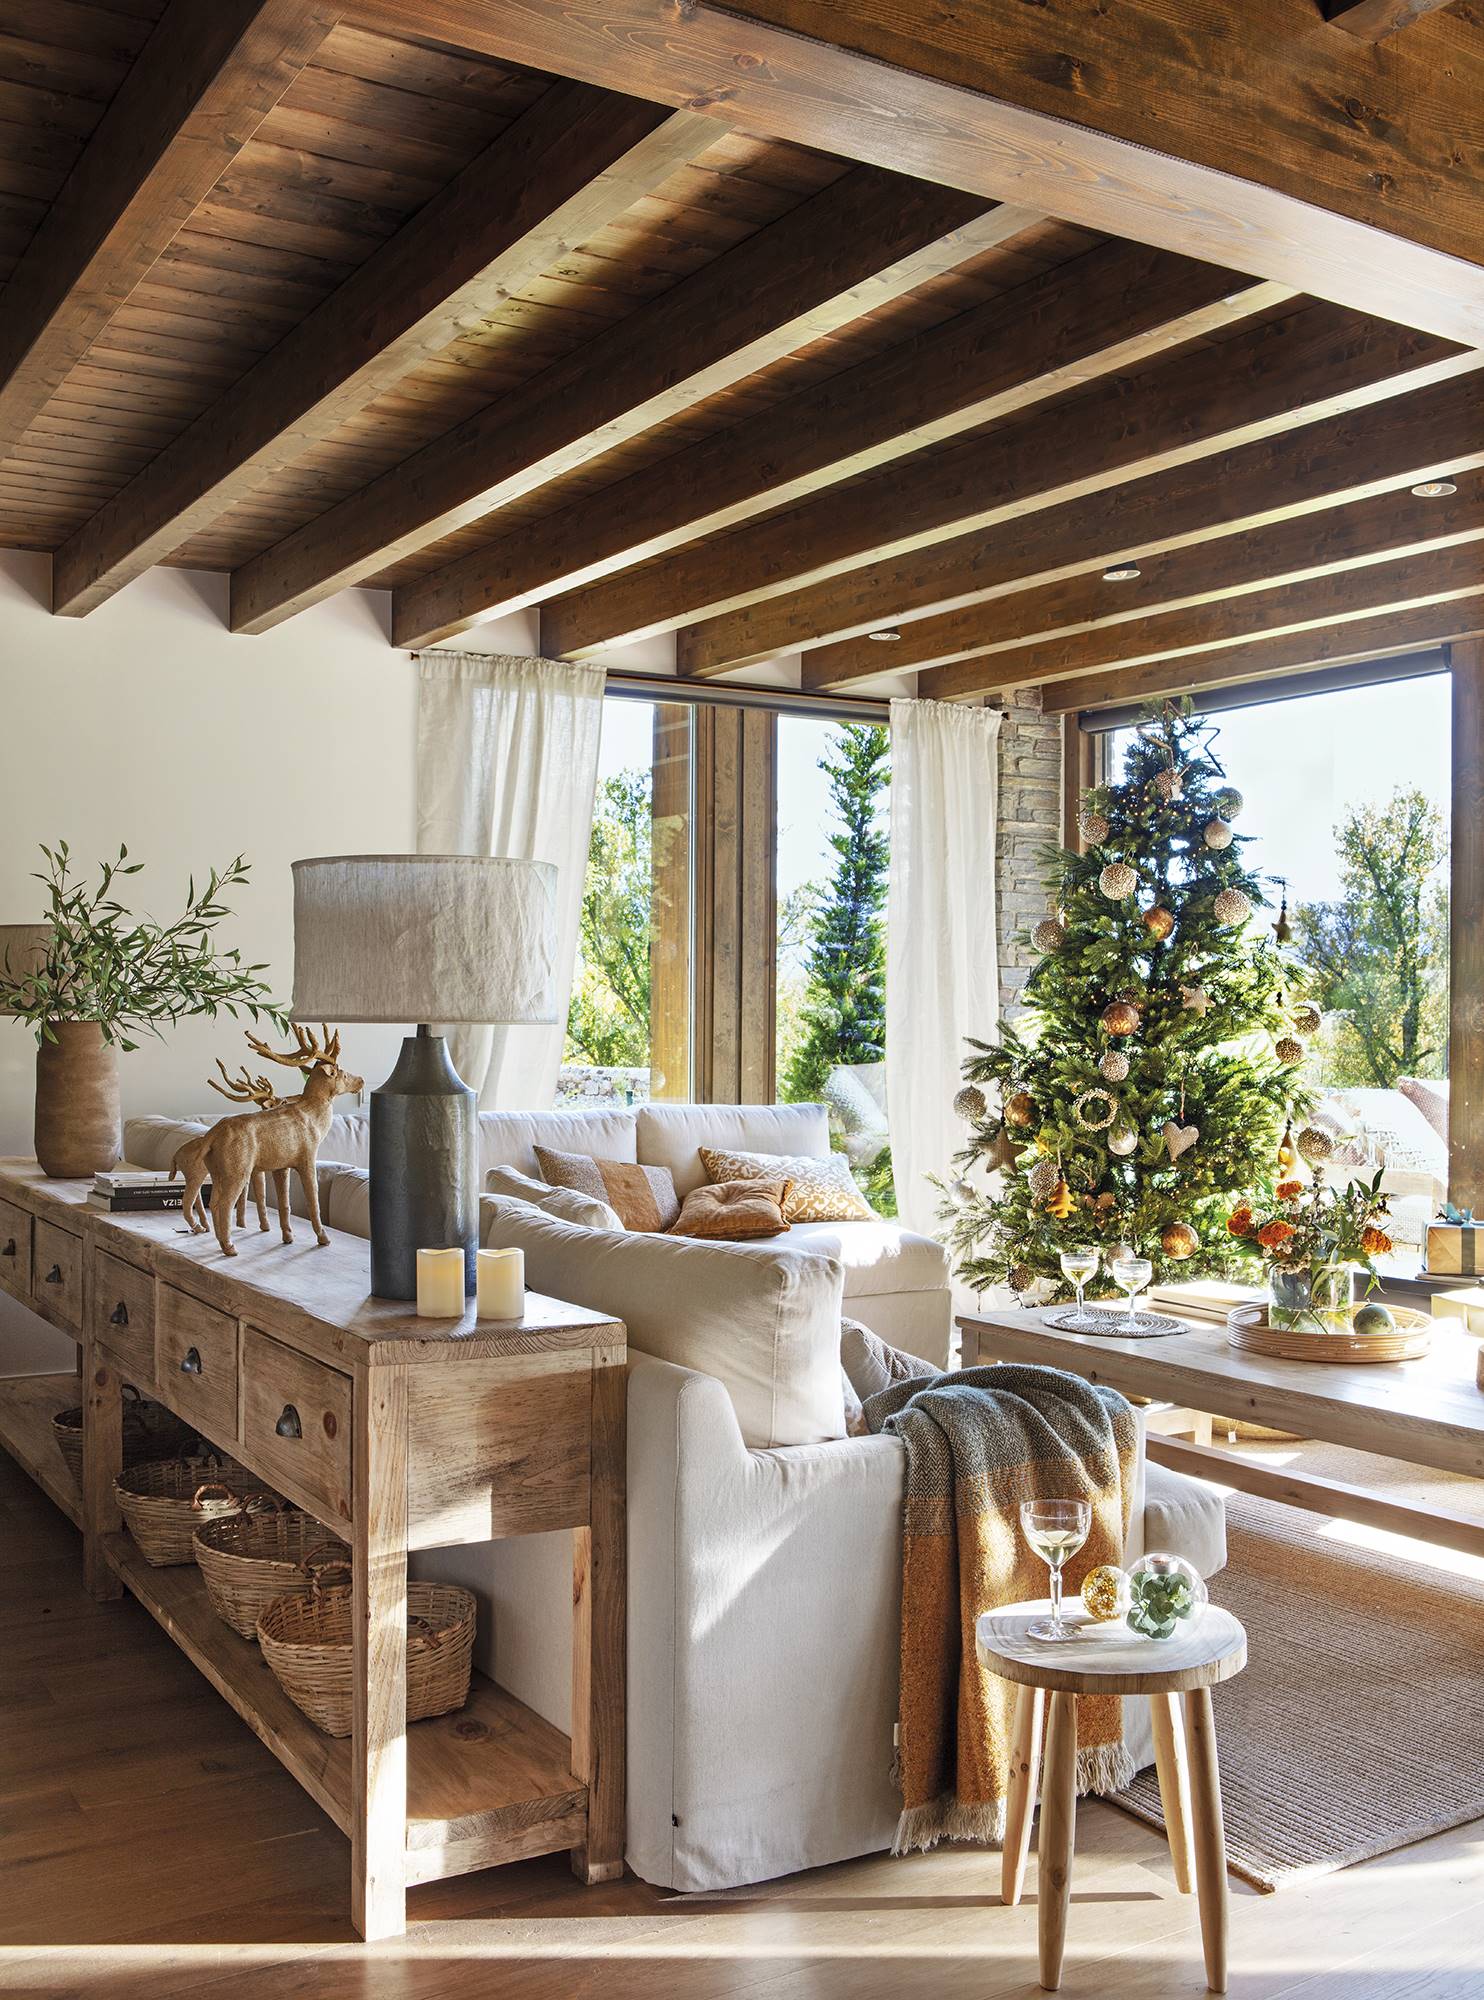 Salón rústico con consola de madera, sofá blanco, vigas y árbol de Navidad.